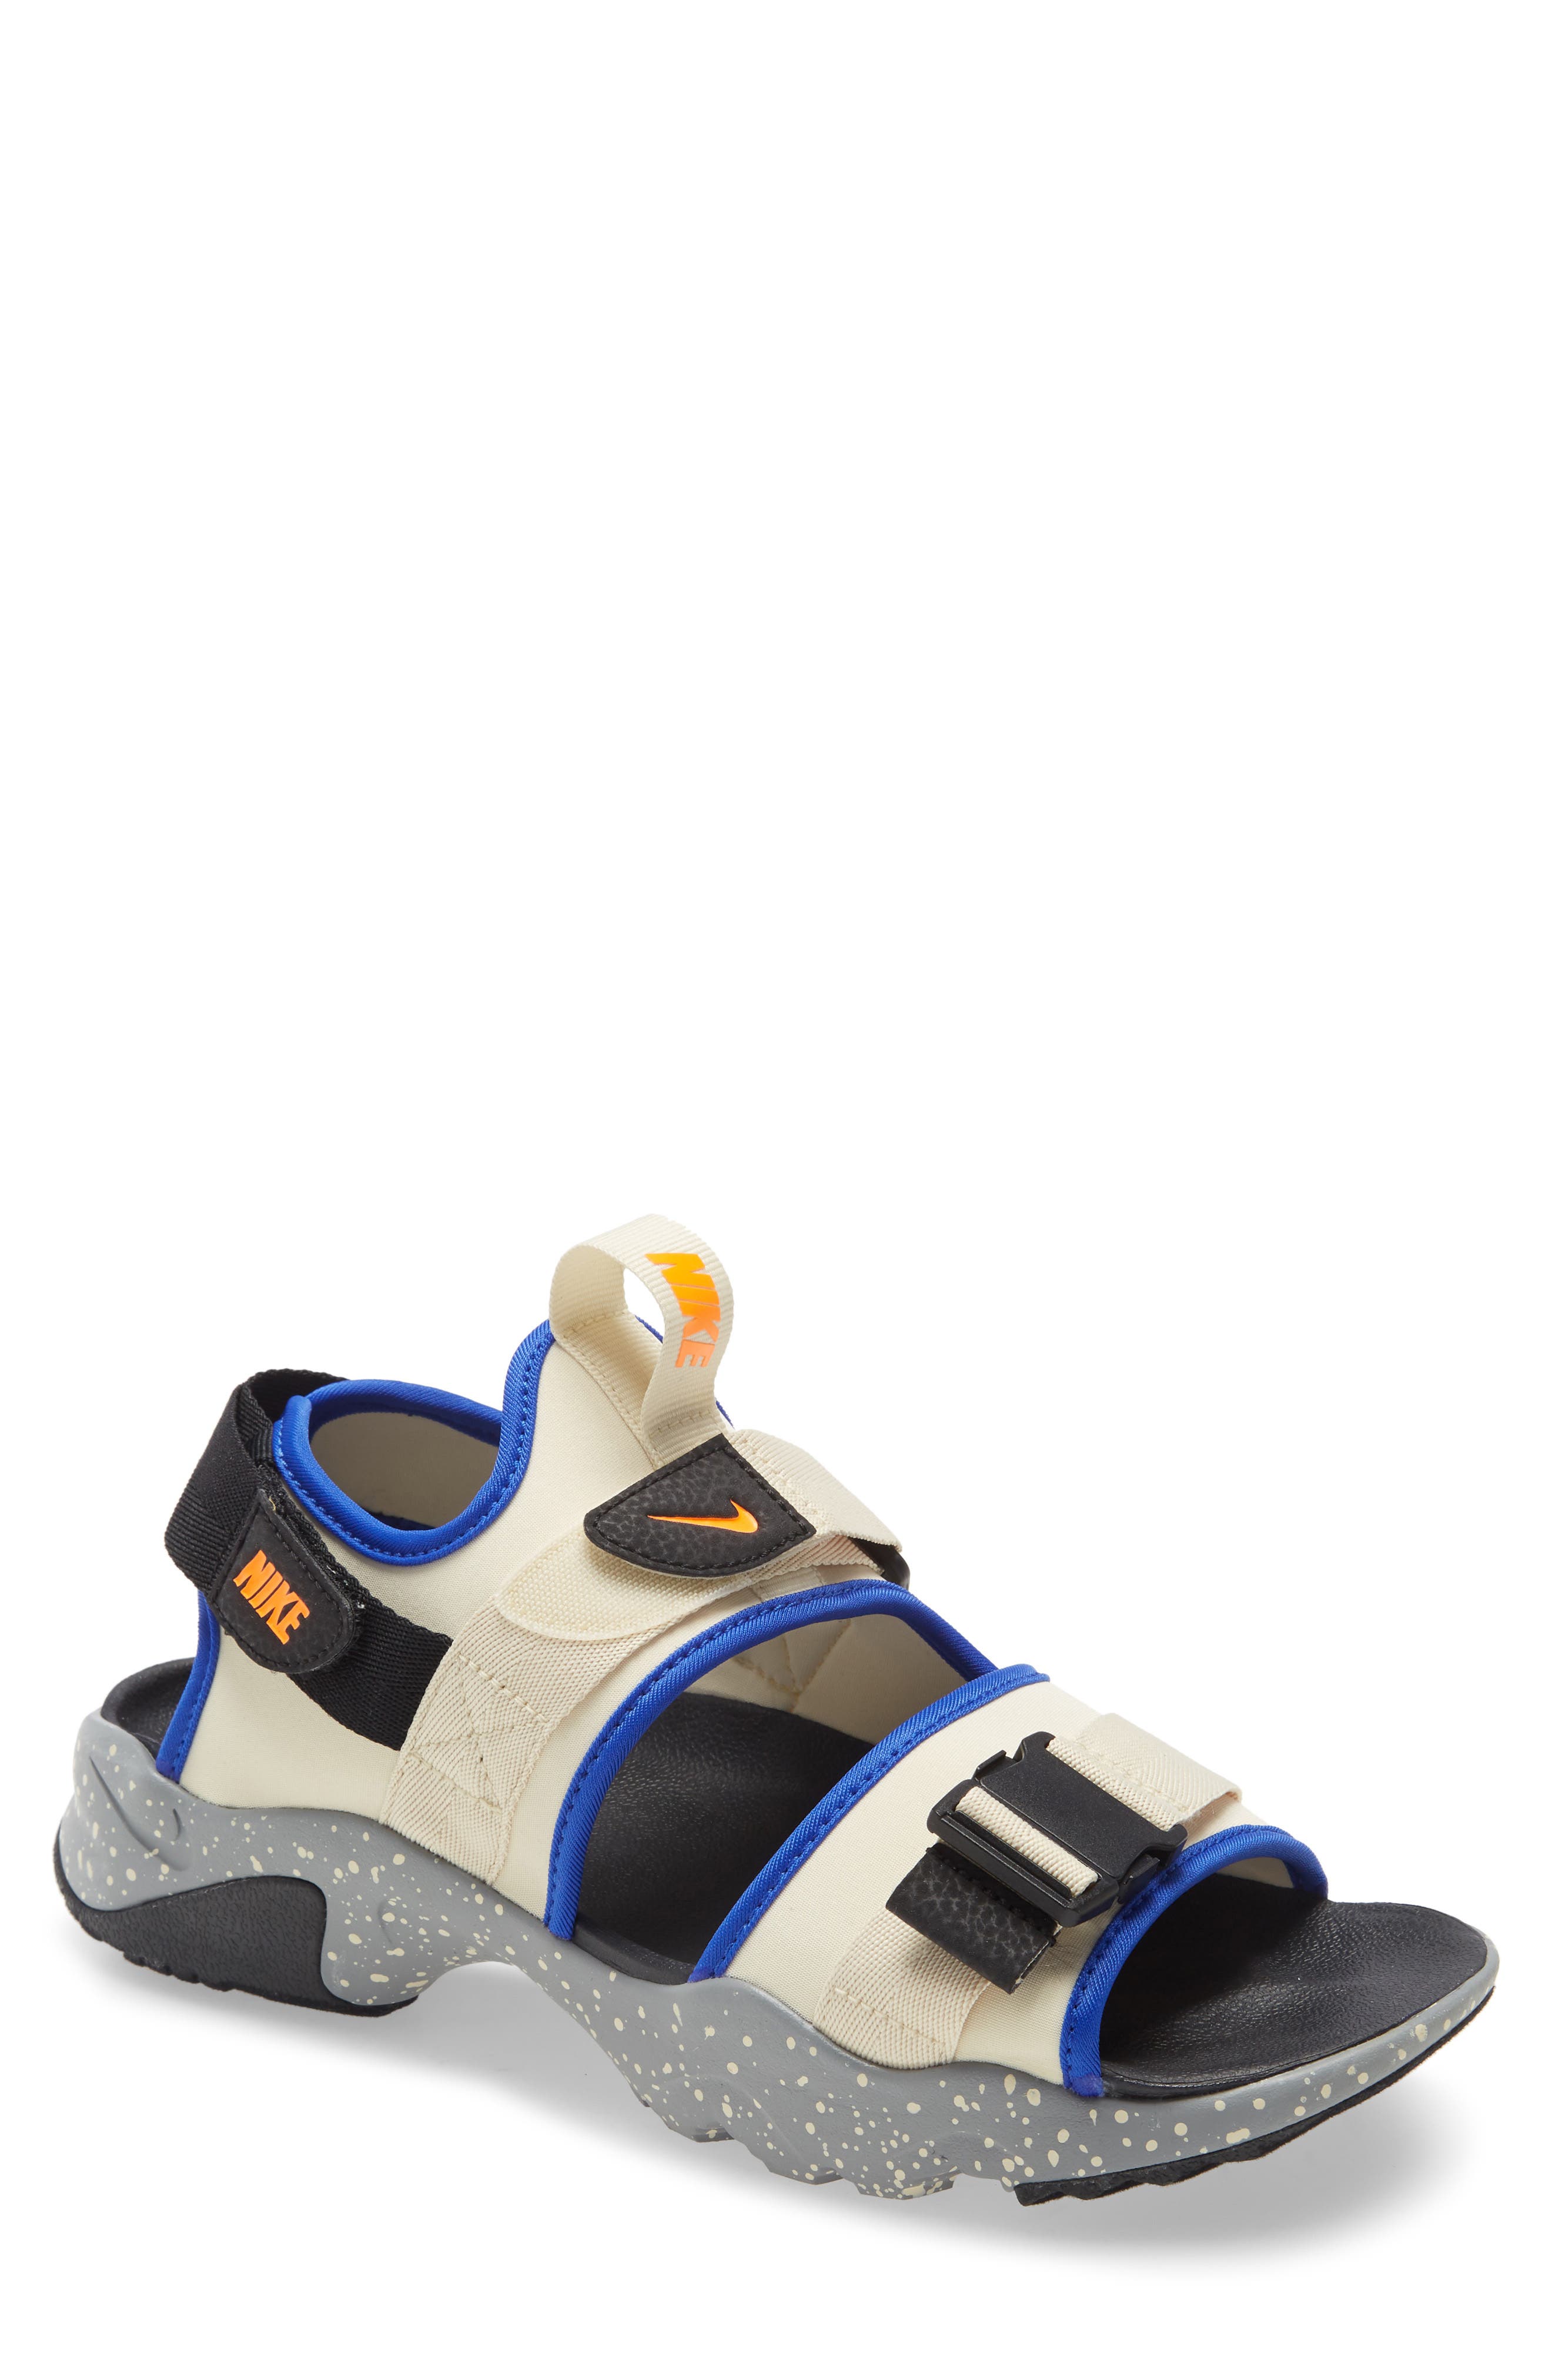 Men's Nike Sandals, Slides \u0026 Flip-Flops 